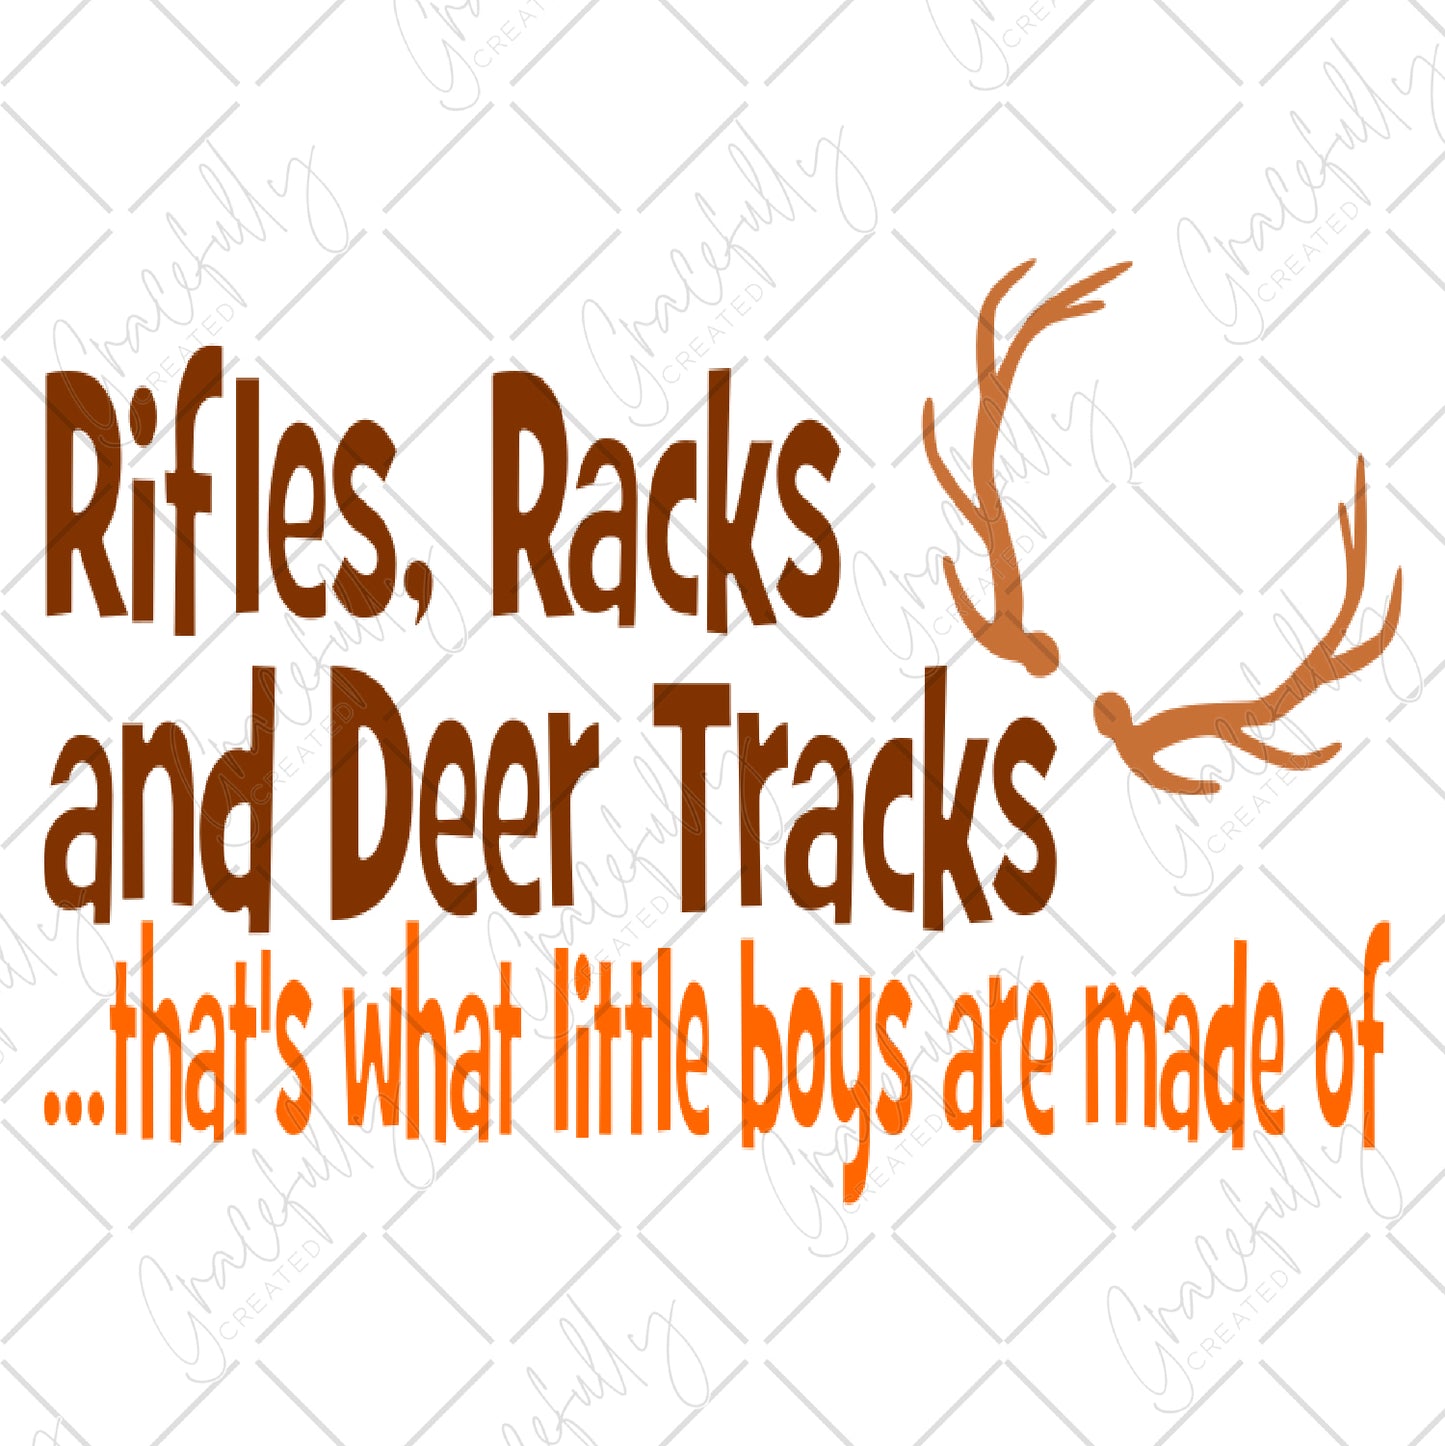 KD5 Rifle, Racks, and Deer Tracks